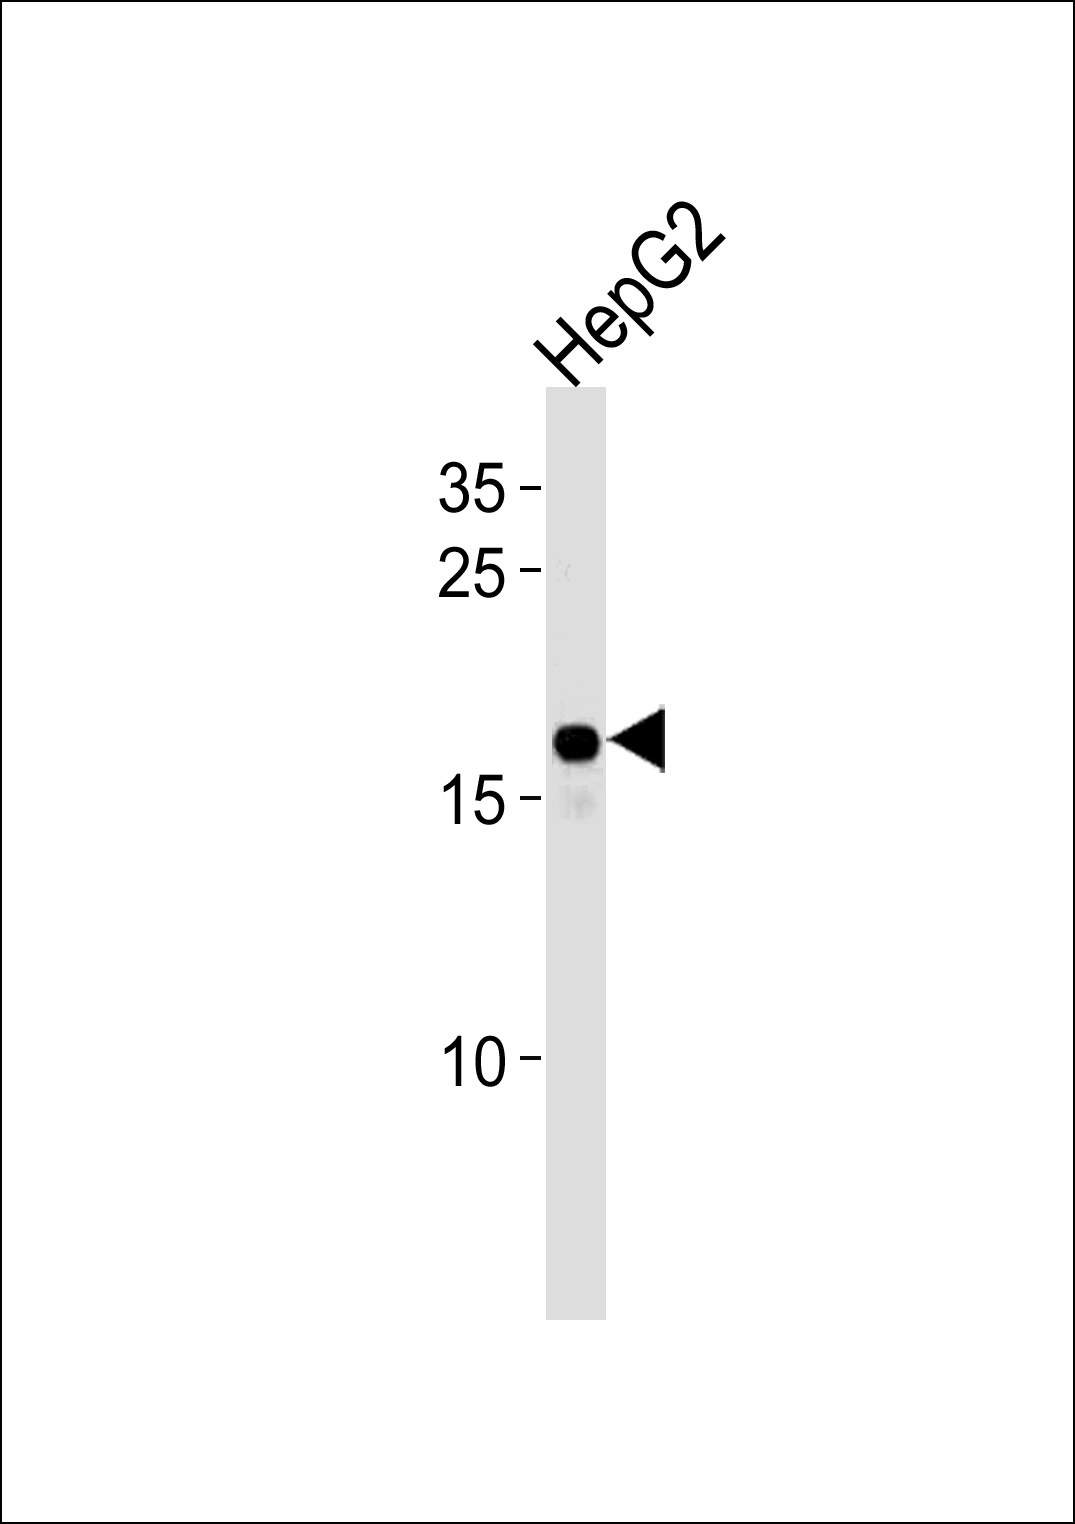 HMGA2 Antibody